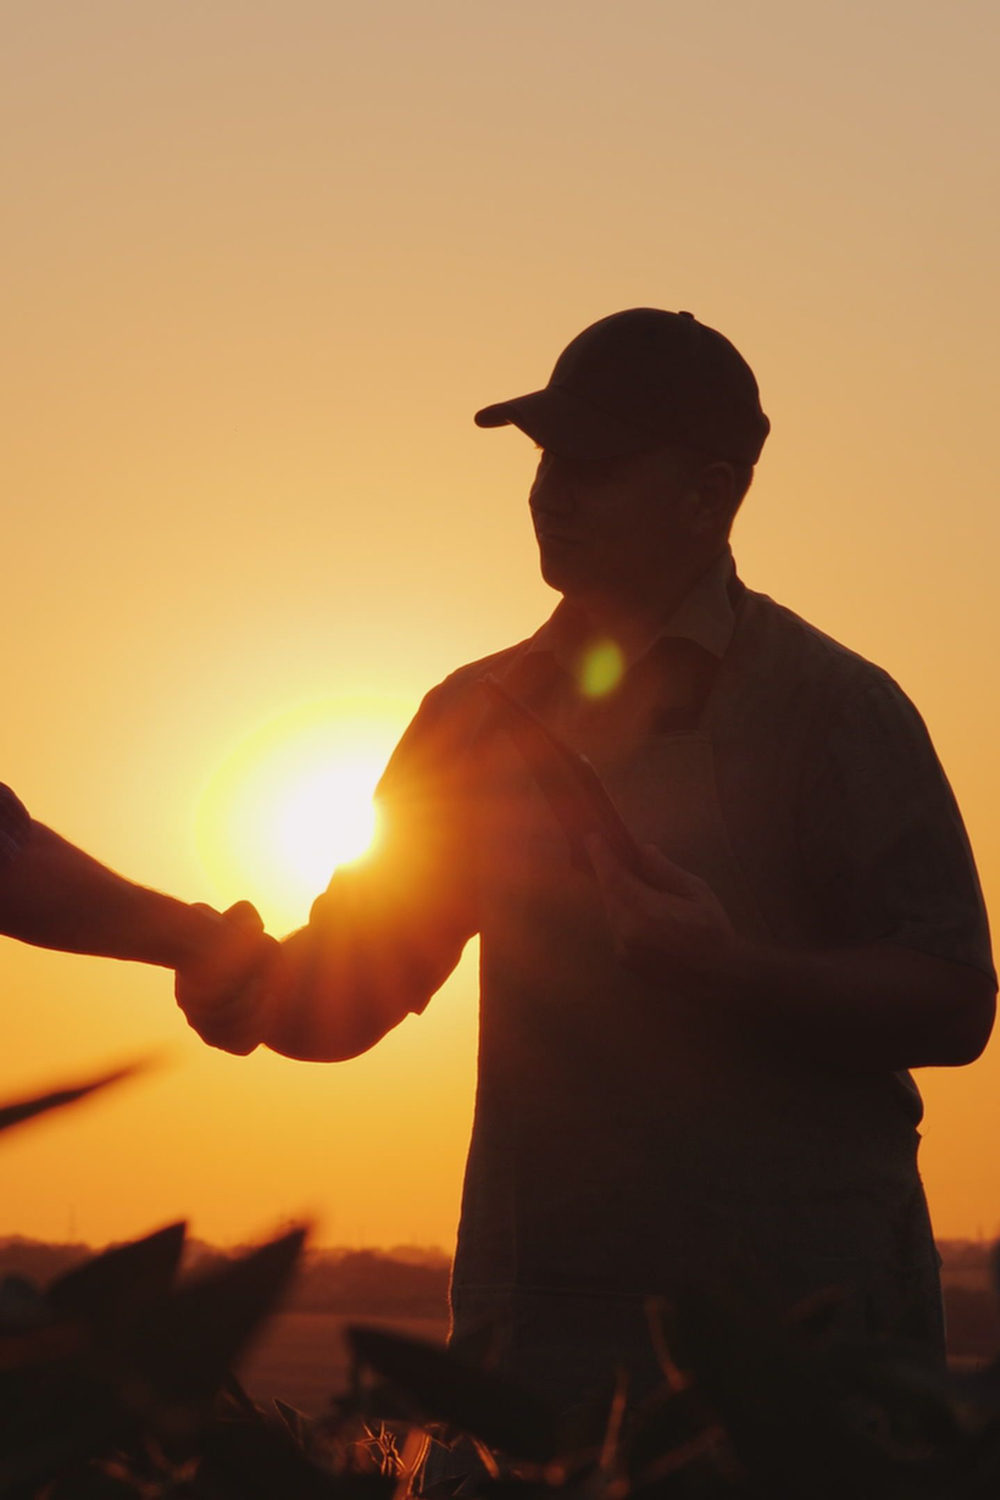 Farmers shaking hands in field